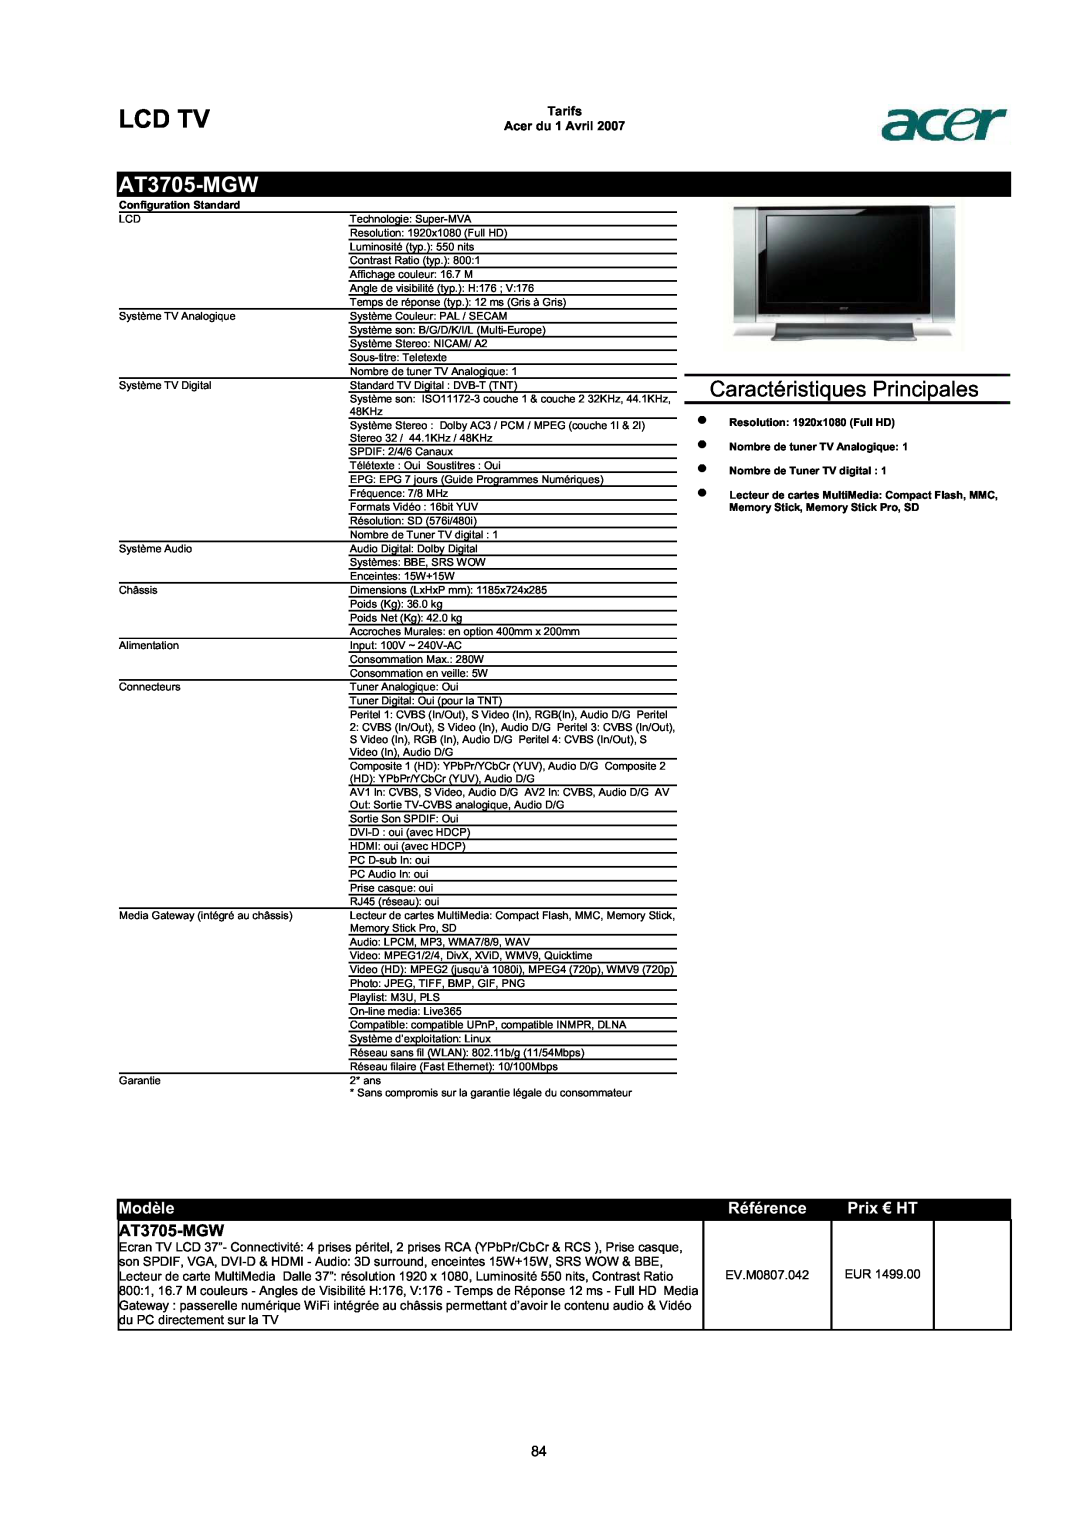 Acer AC713B-17 AT3705-MGW, Lcd Tv, Caractéristiques Principales, Modèle, Référence, Prix € HT, Tarifs Acer du 1 Avril 